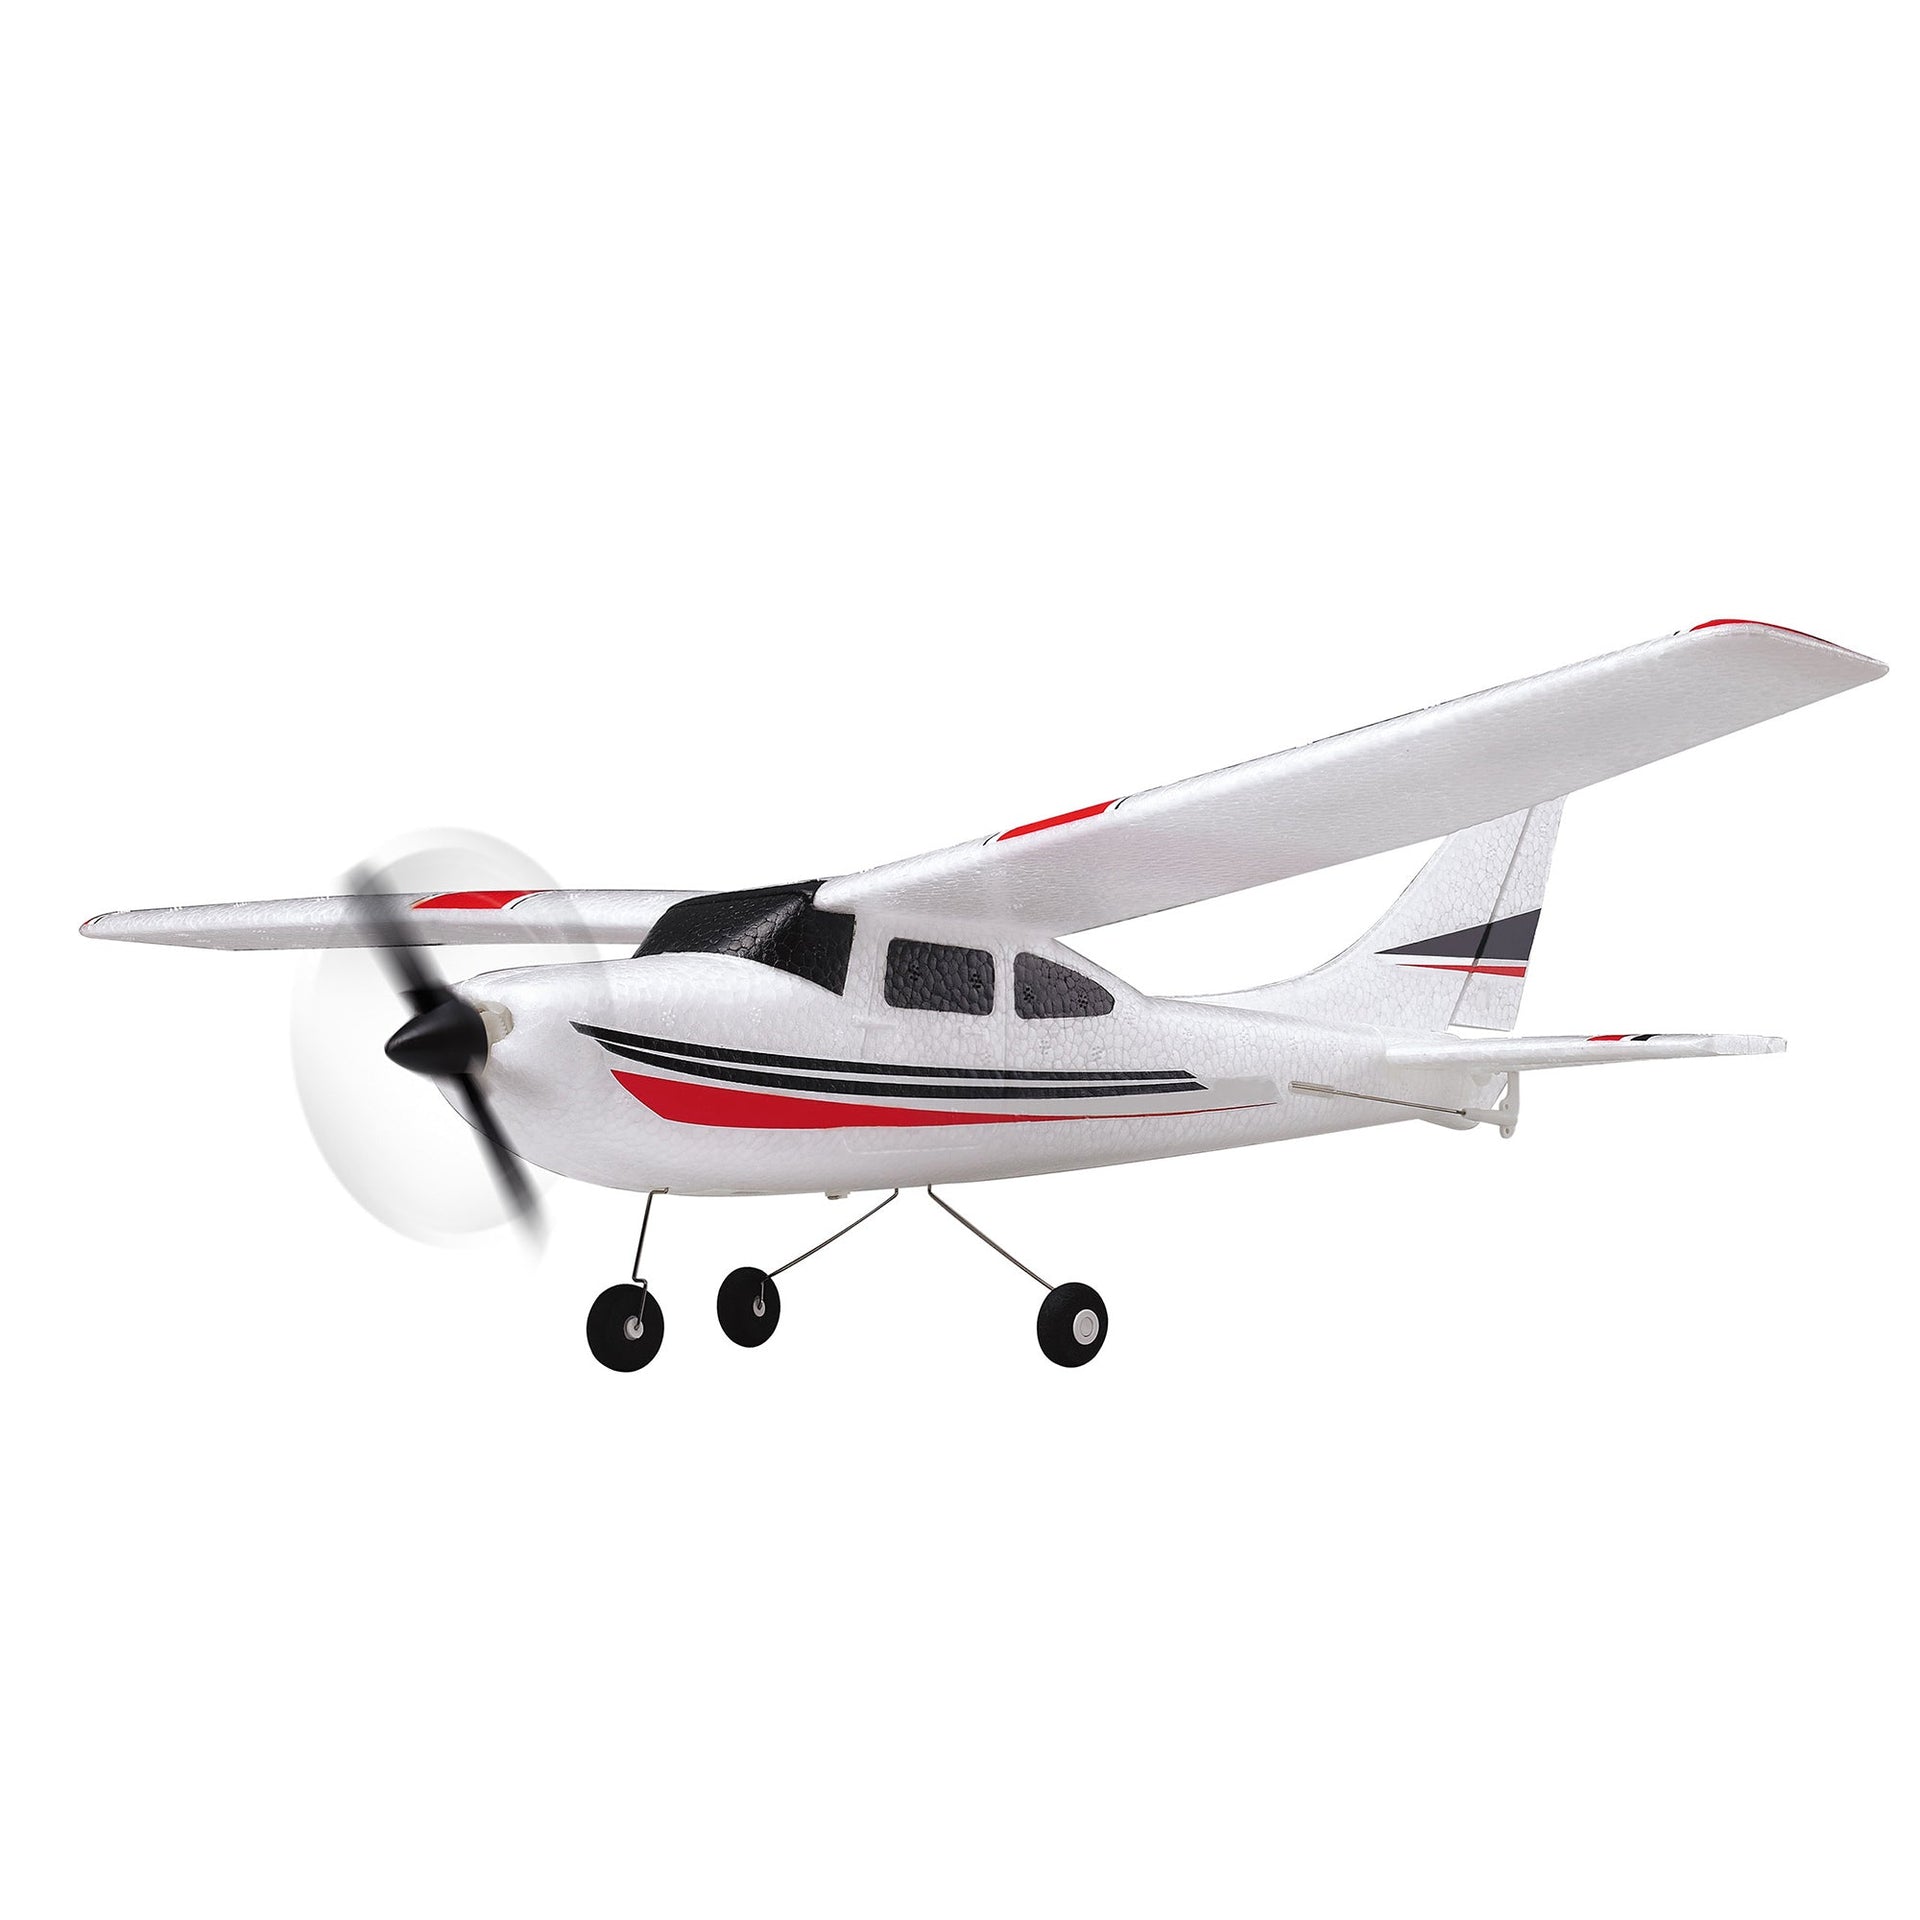 Avion télécommandé Air Trainer V2 2.4 GHz blanc rouge